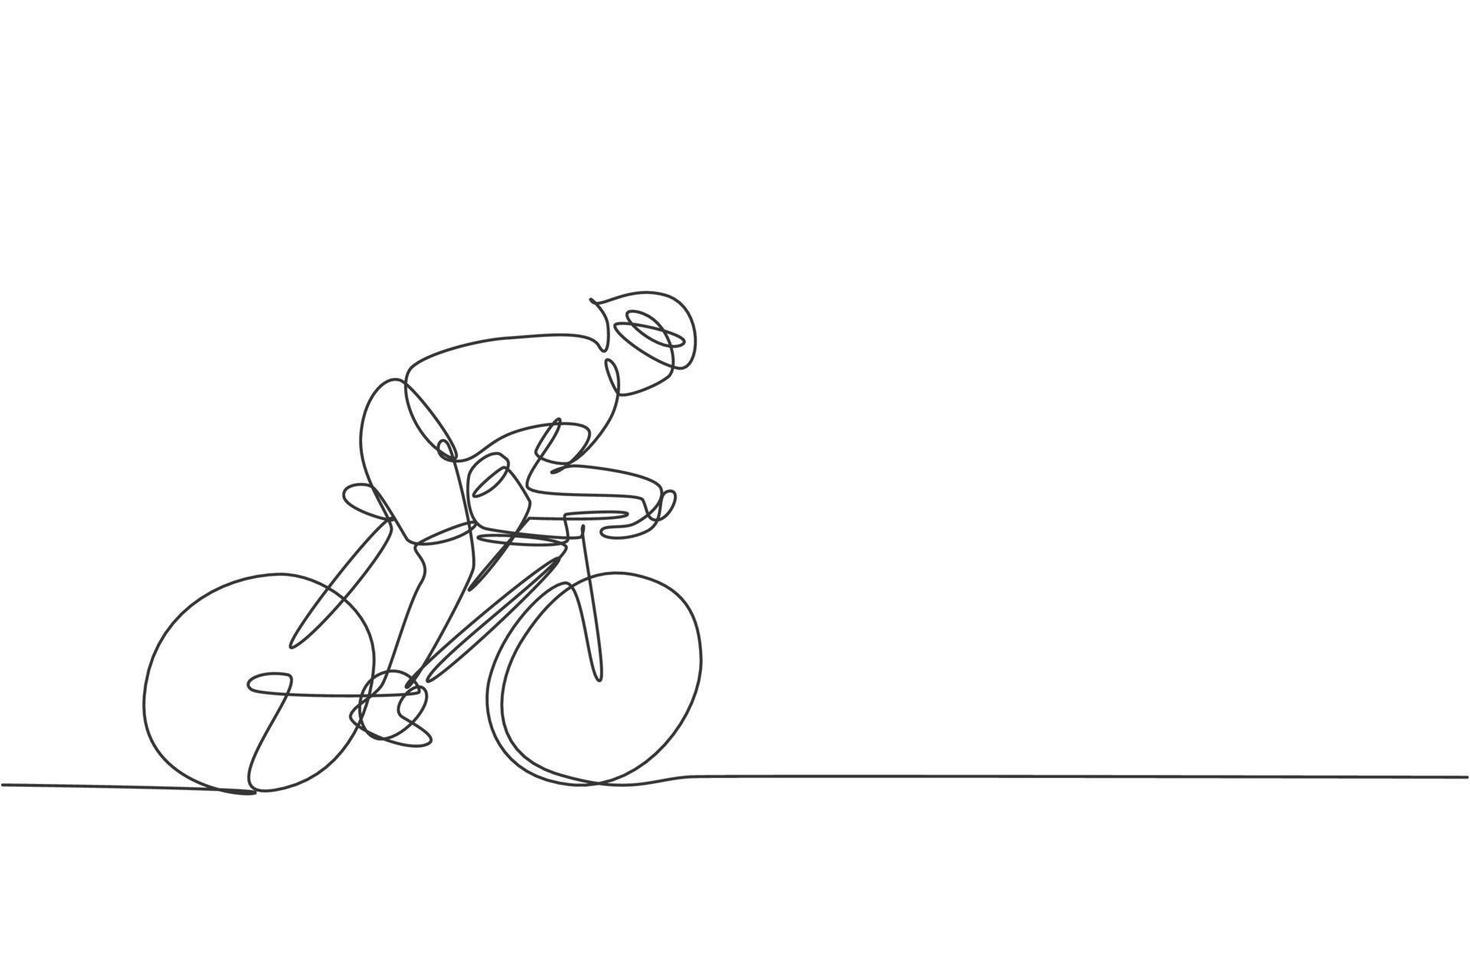 Eine einzige Strichzeichnung eines jungen, energischen Radrennfahrers verbessert seine Geschwindigkeit bei der Vektorgrafik der Trainingseinheit. Rennradfahrer-Konzept. Design mit durchgehender Linie für Radsport-Event-Banner vektor